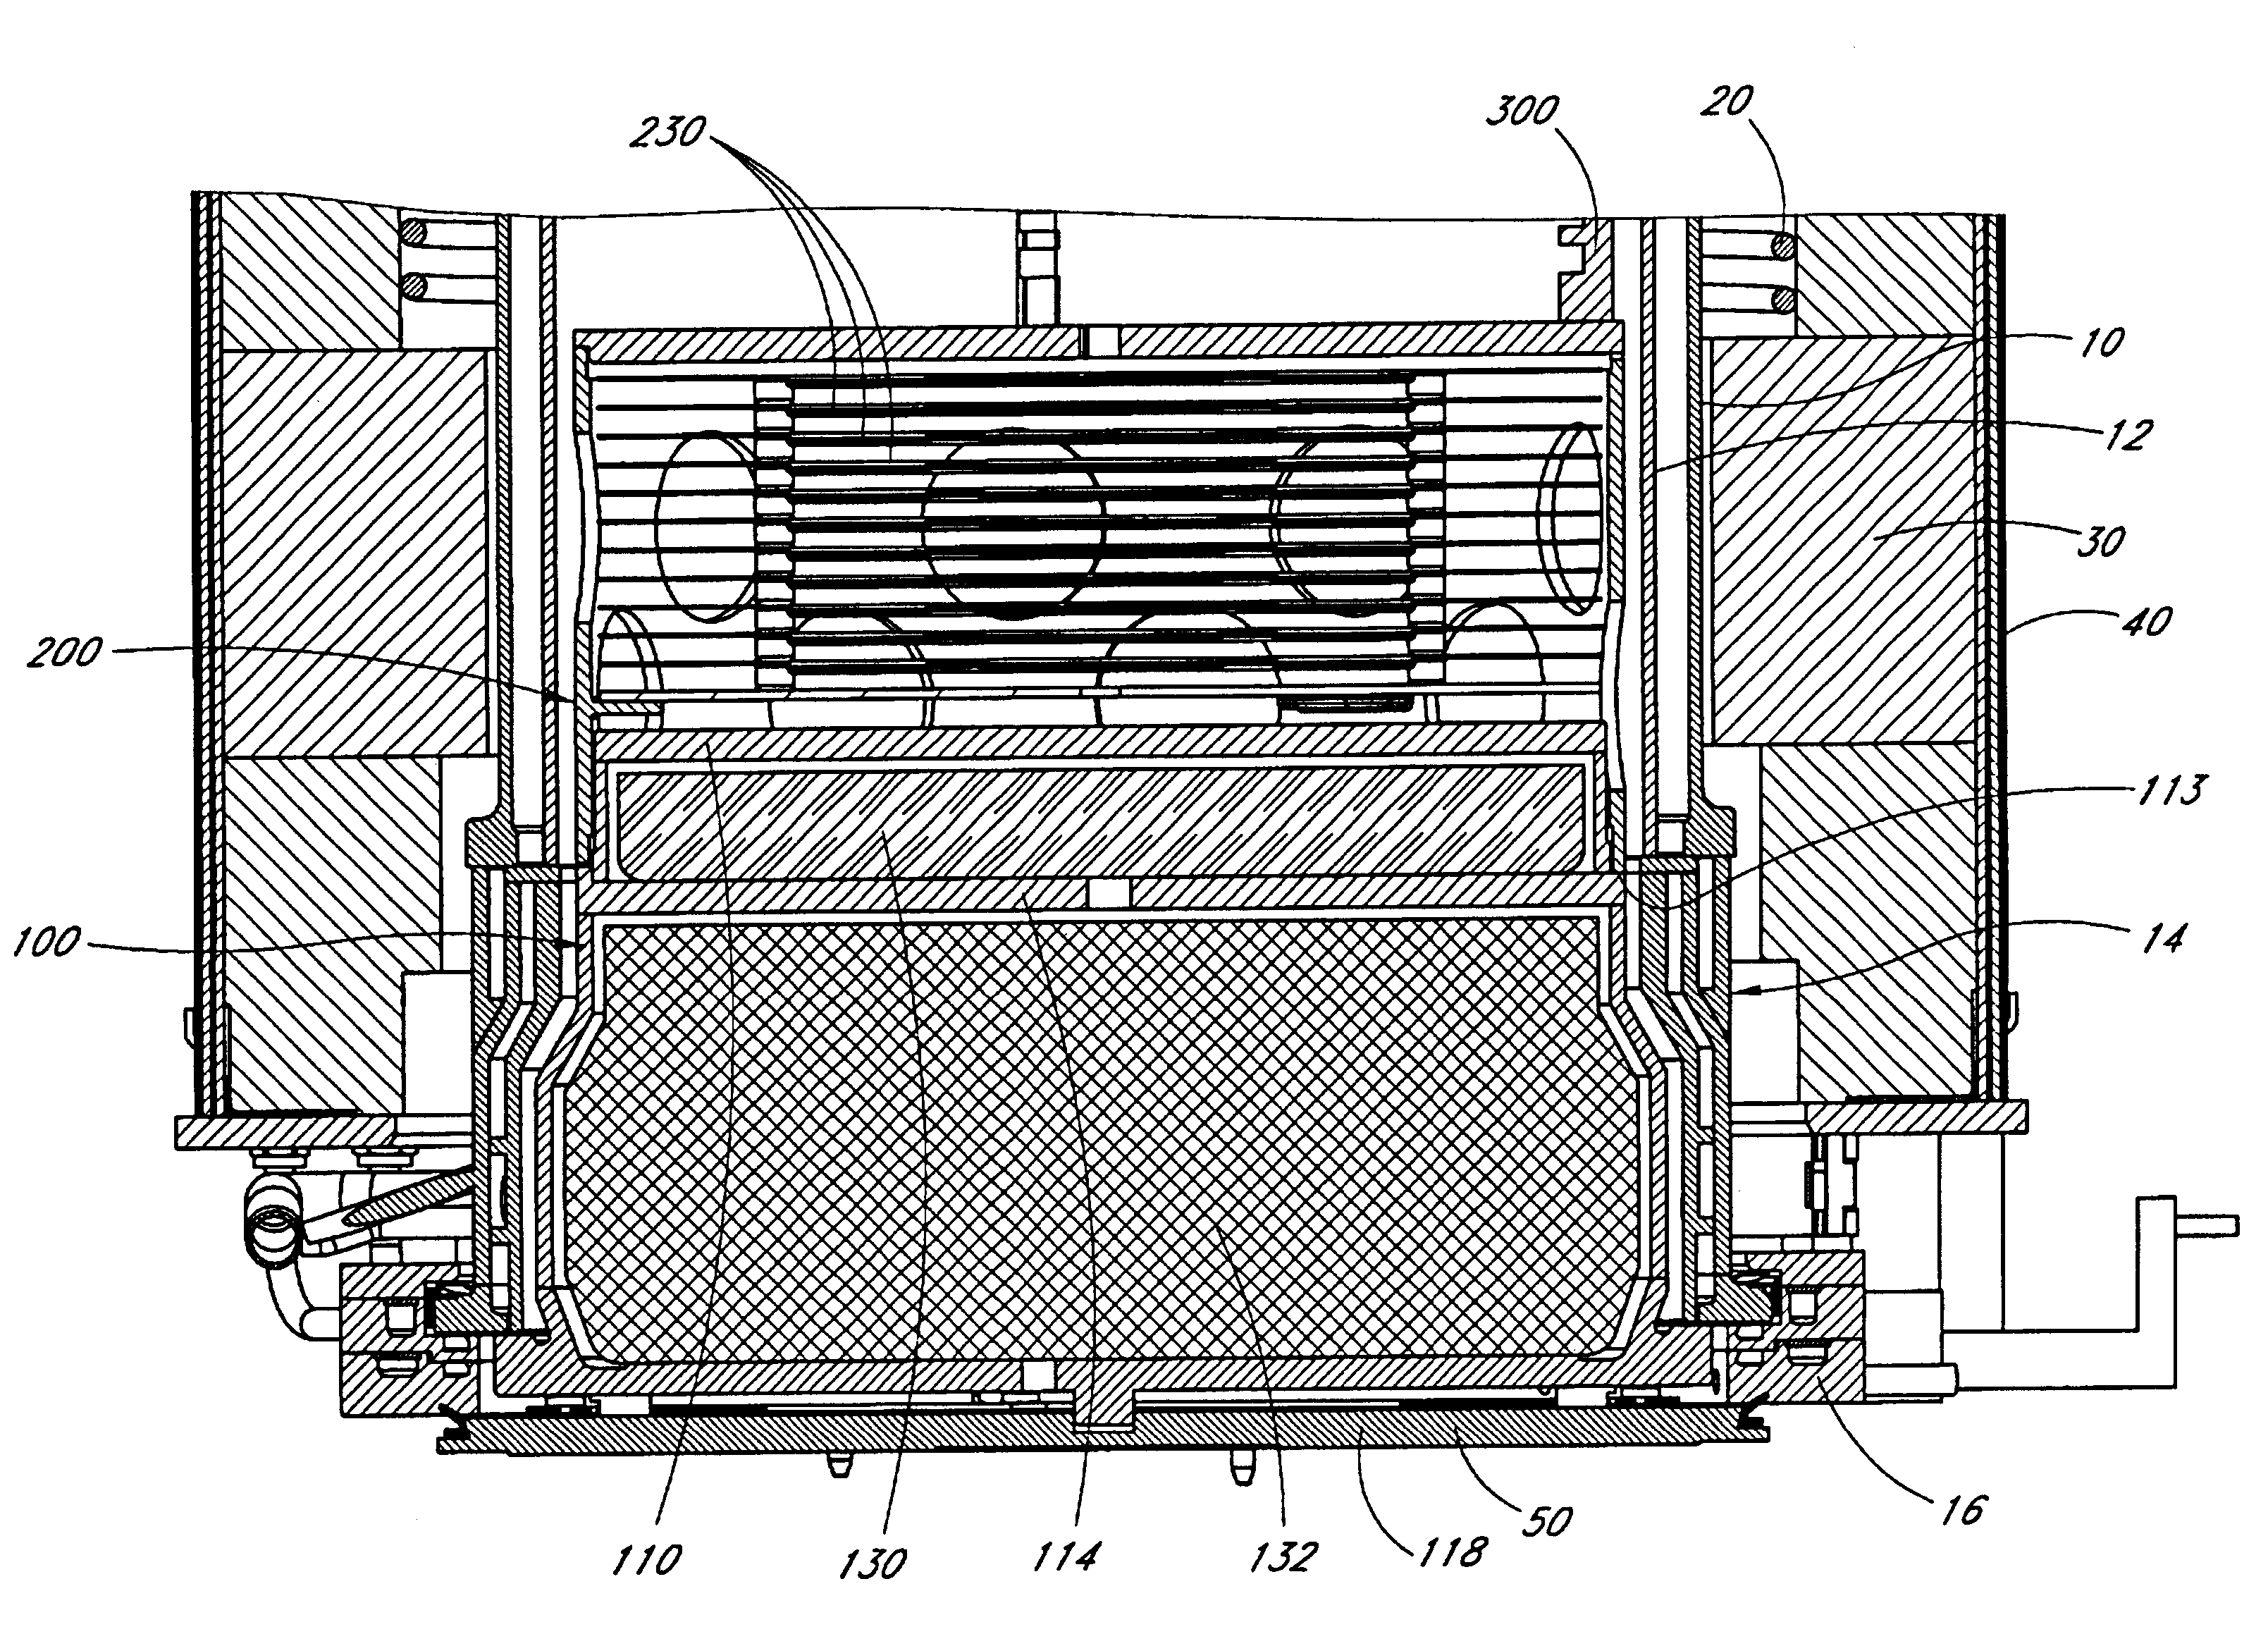 Multilevel pedestal for furnace